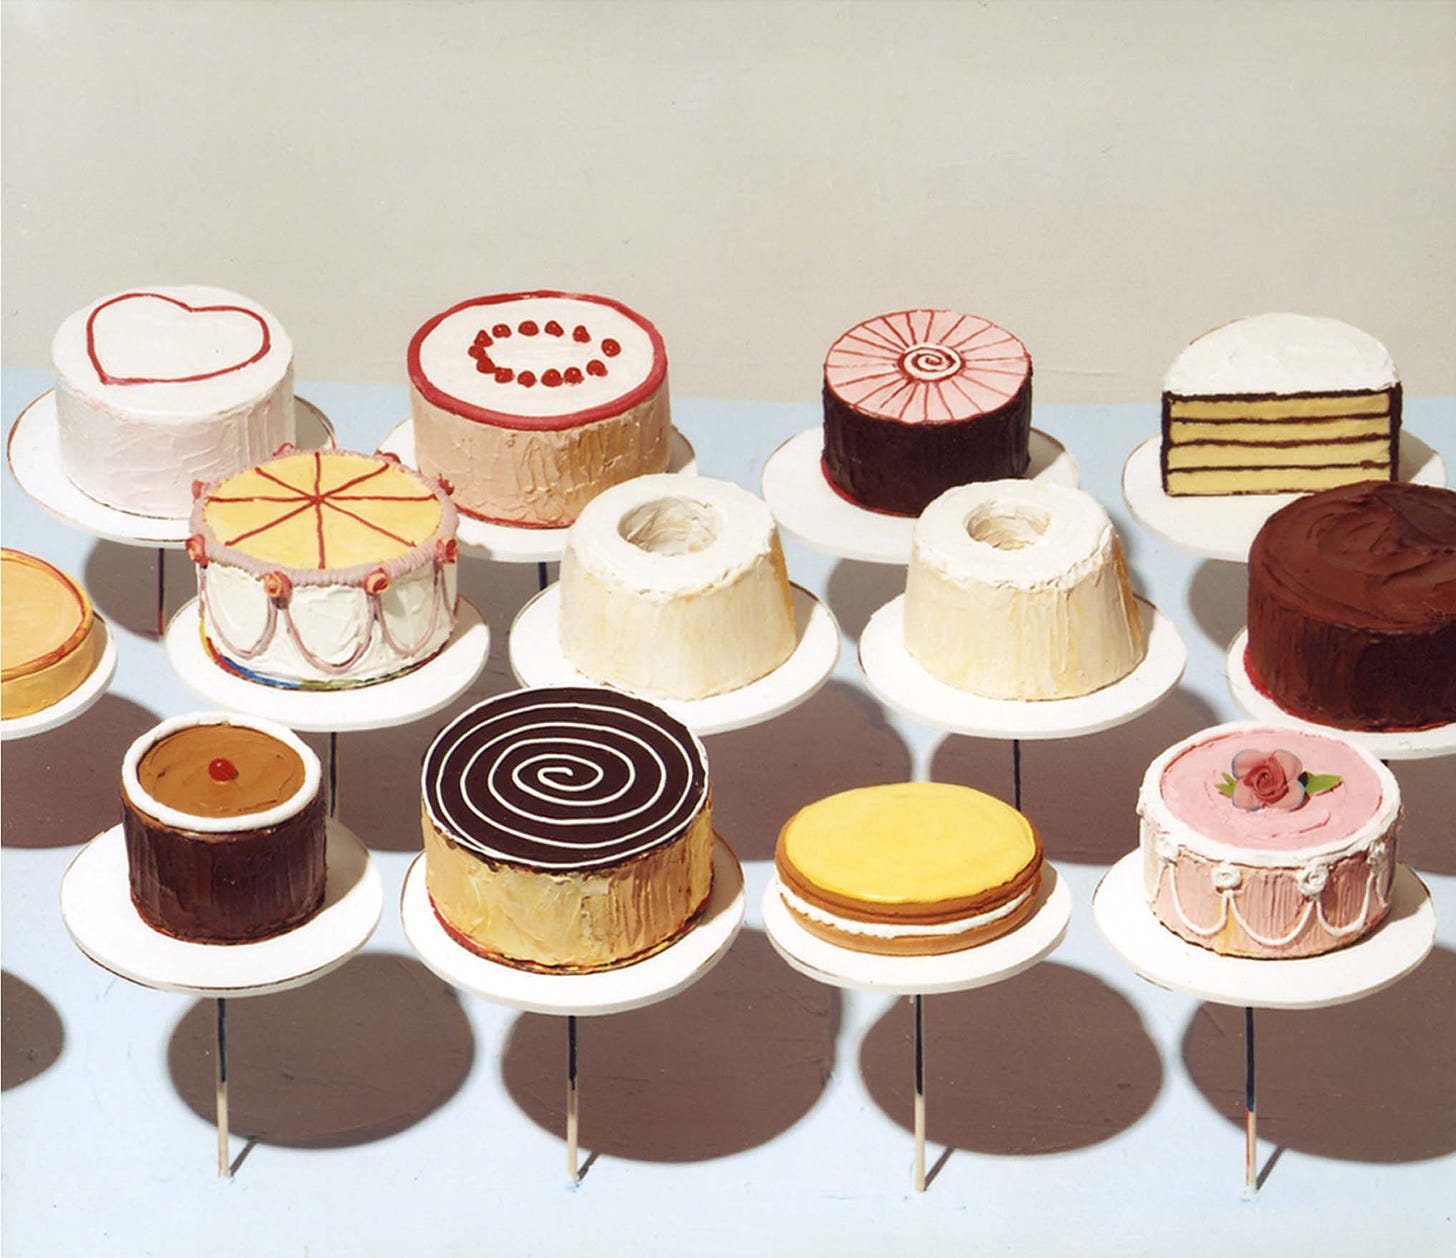 Wayne Thiebaud Cakes 1963 oil on canvas |